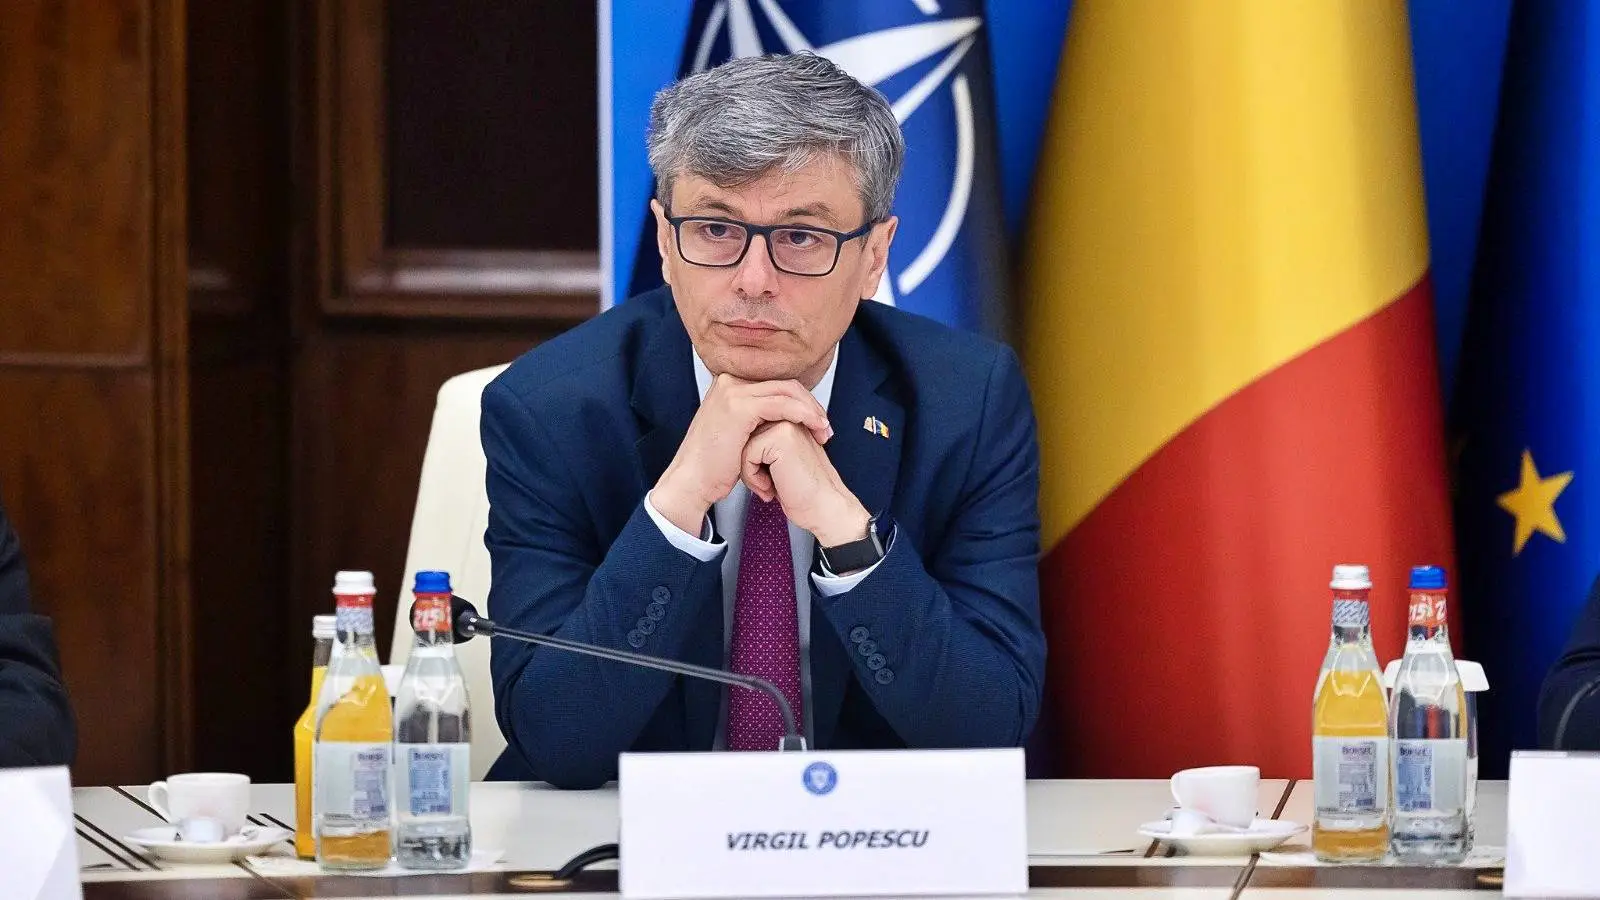 Minister Energii WAŻNE Decyzje Gaz Ziemny Rumunia Decyzje na szczeblu europejskim